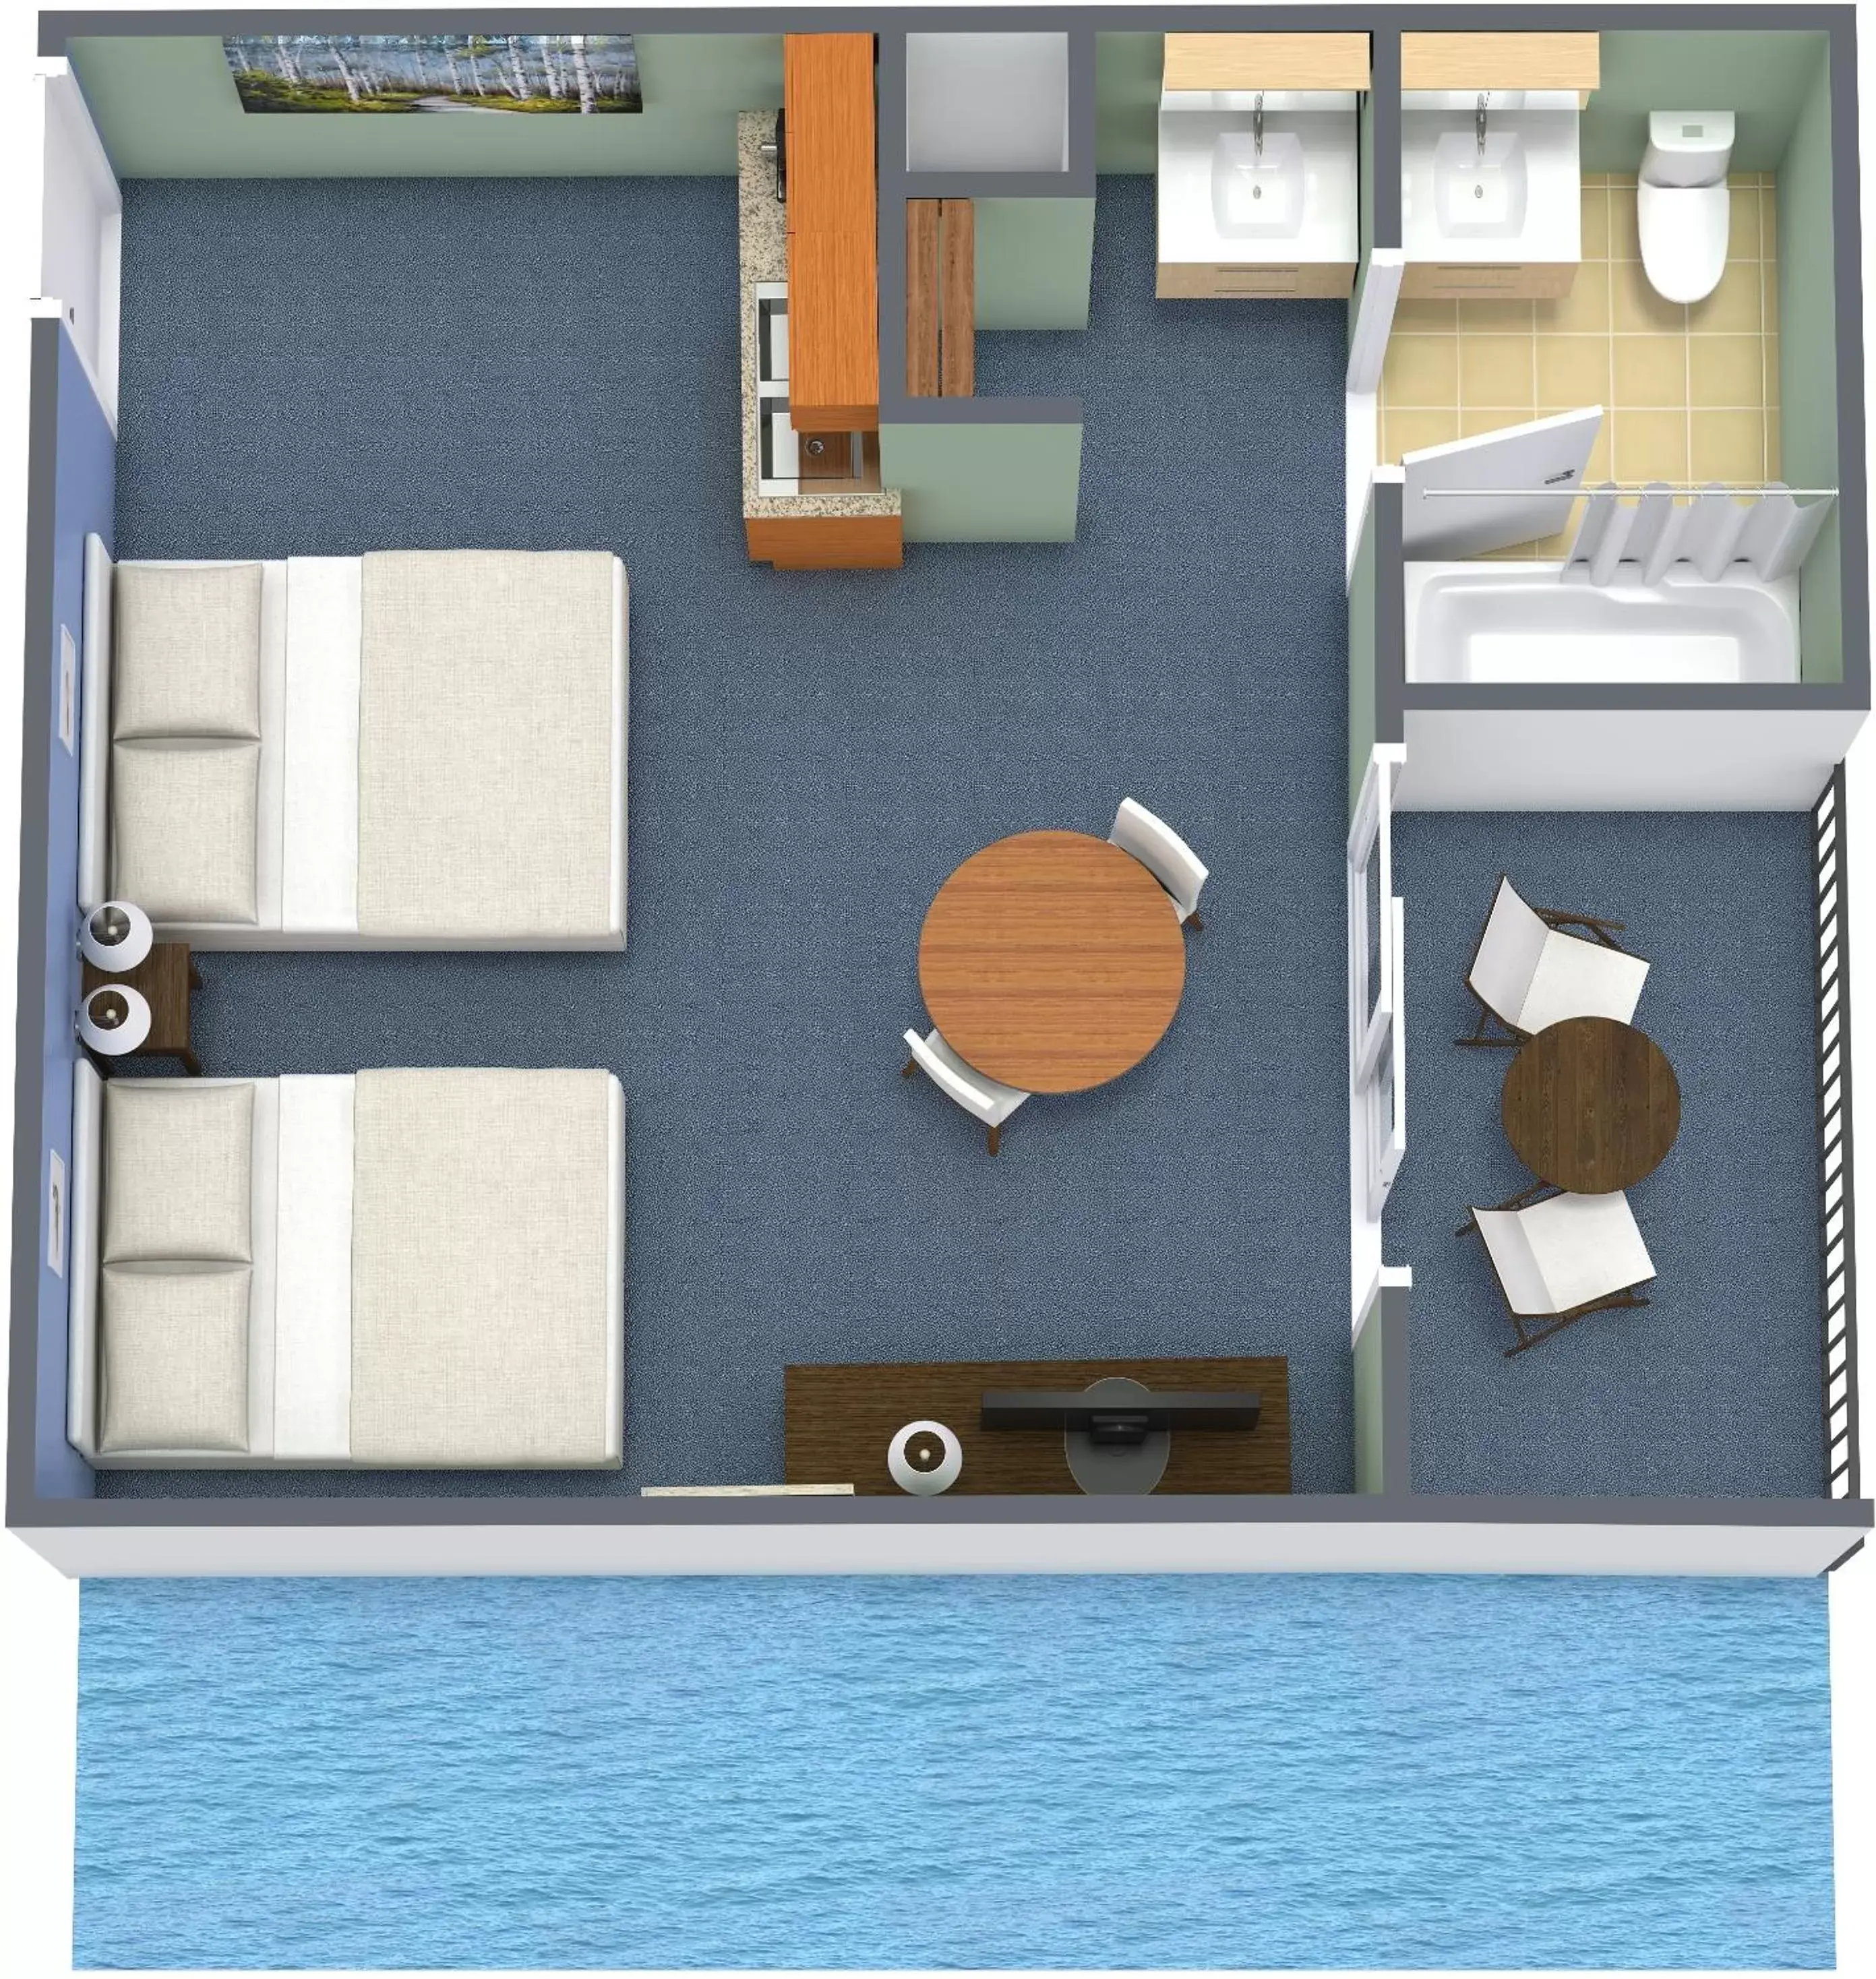 Floor Plan in Breakers Resort Hotel